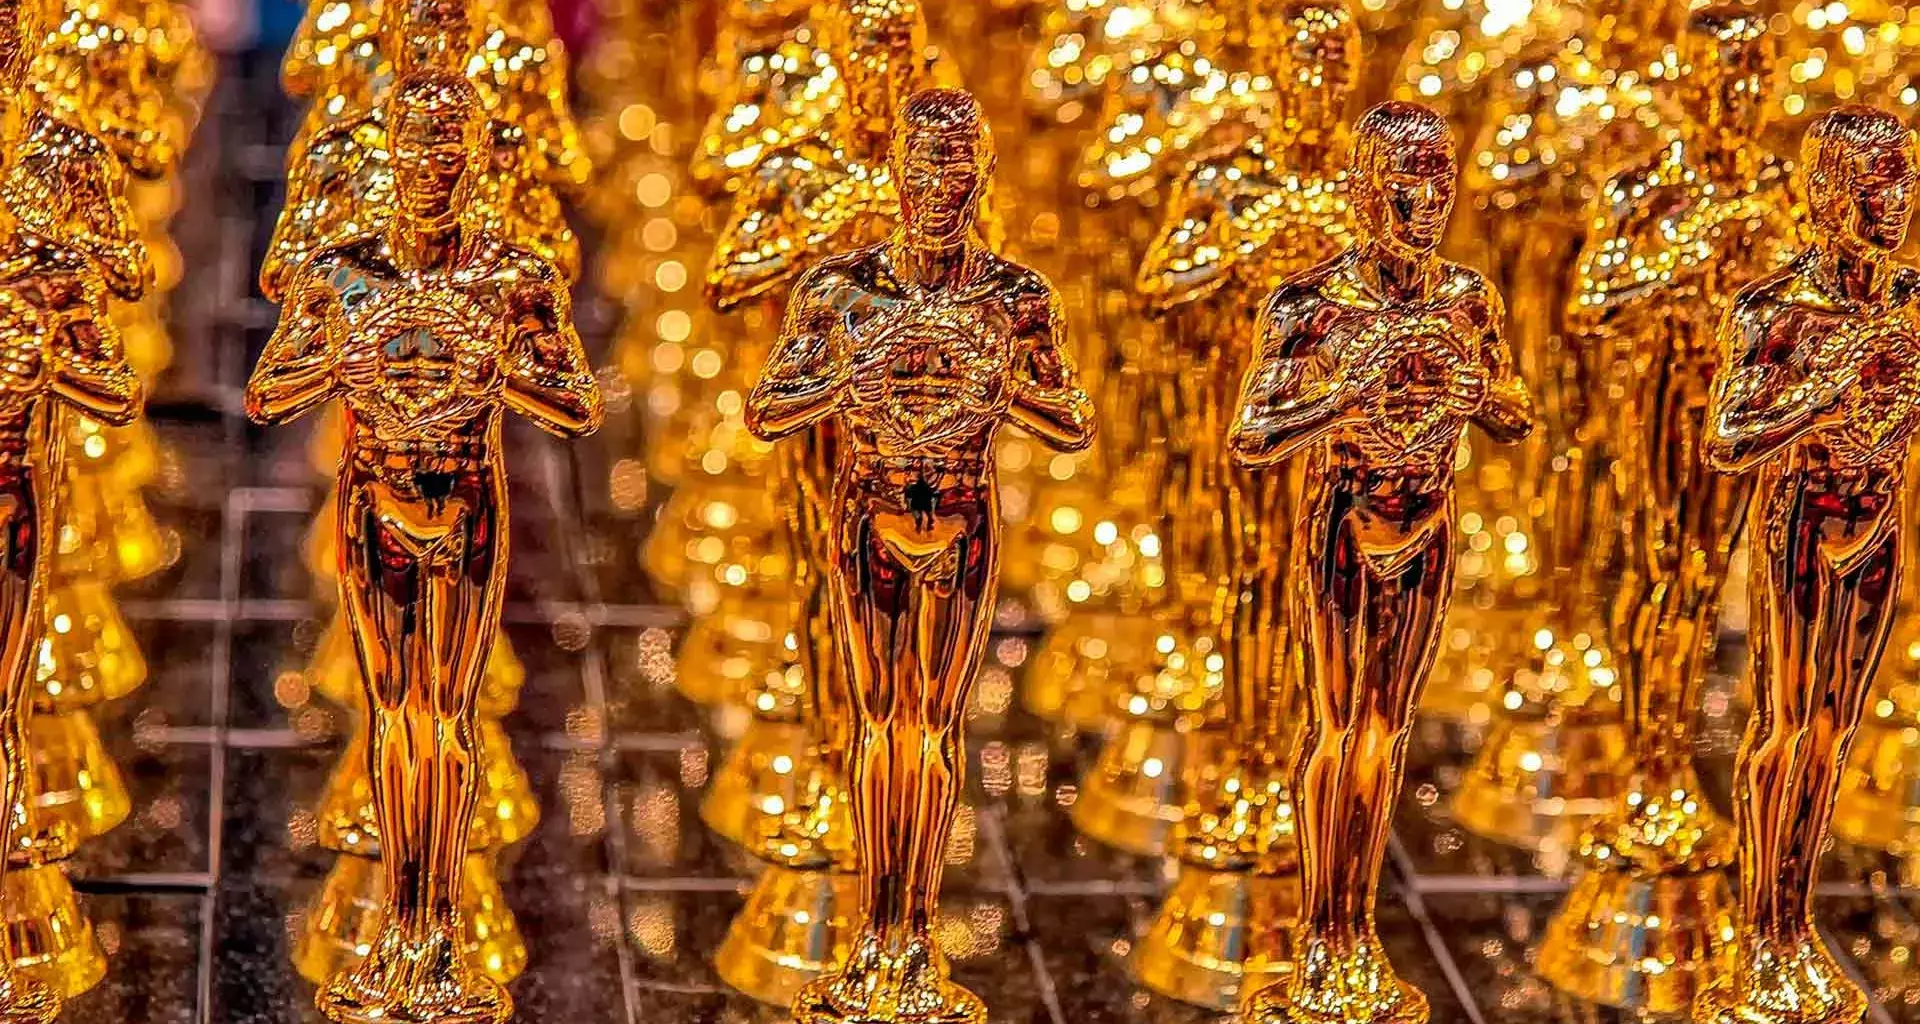  Los Óscar se realizarán este 27 de marzo, conoce las películas con más nominaciones.